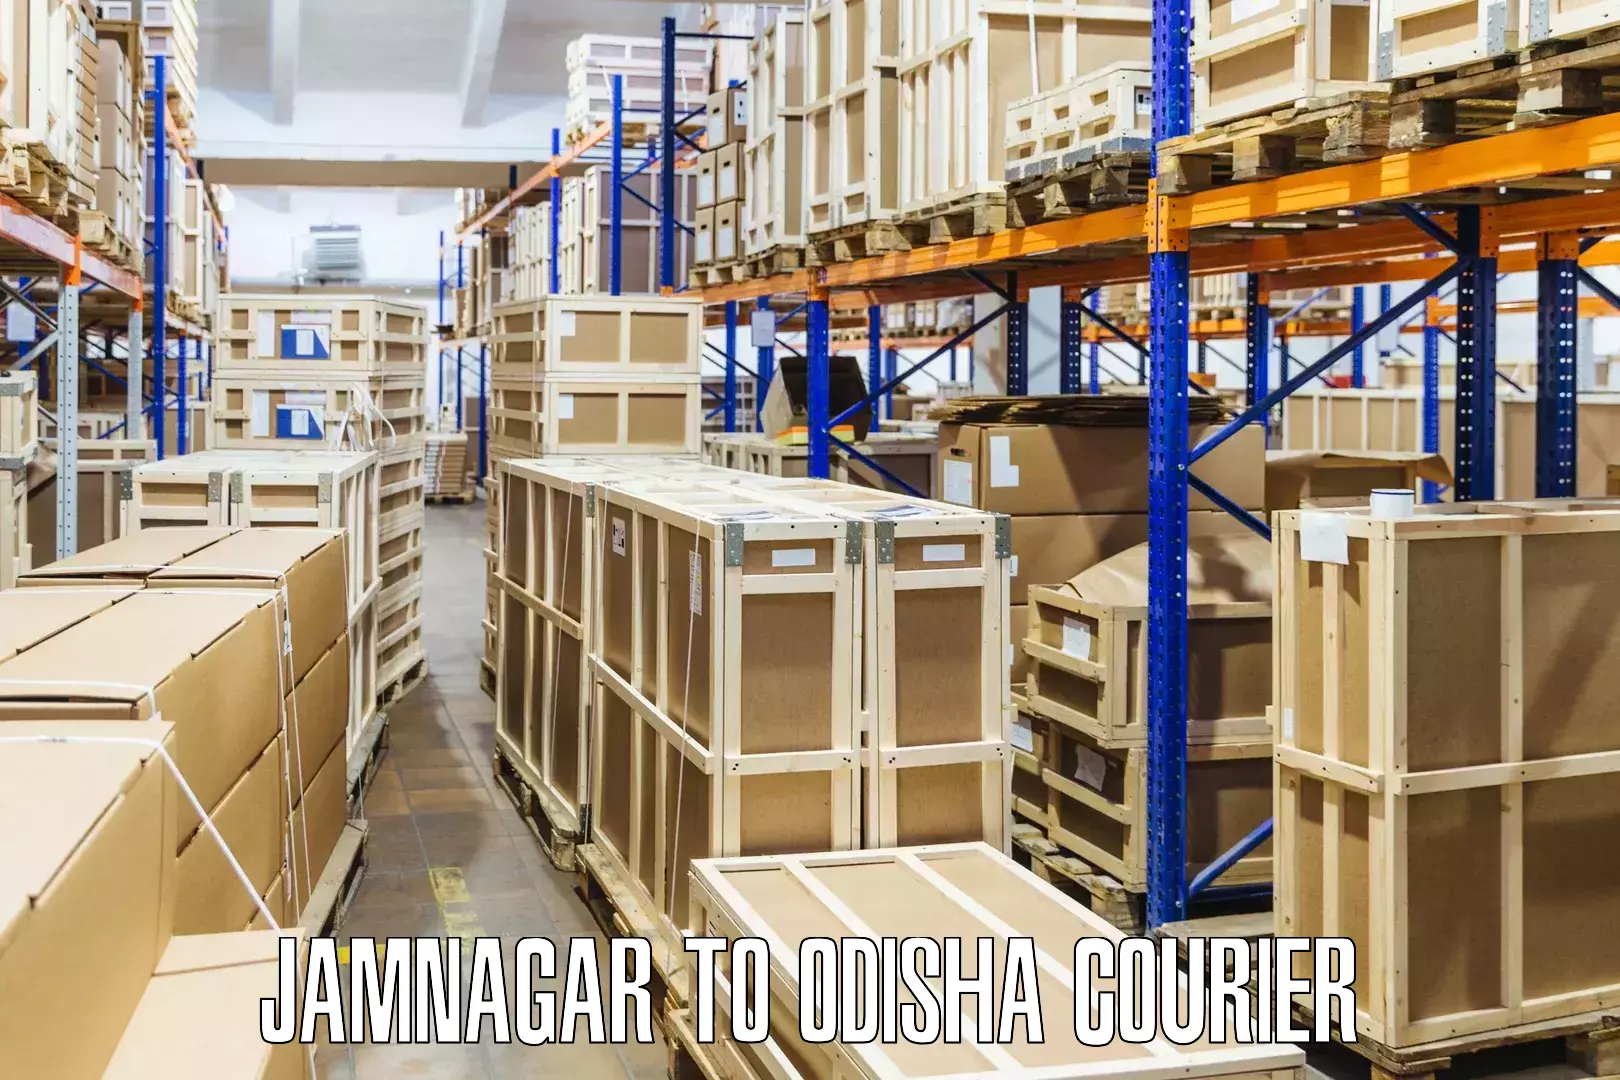 Nationwide courier service Jamnagar to Odisha